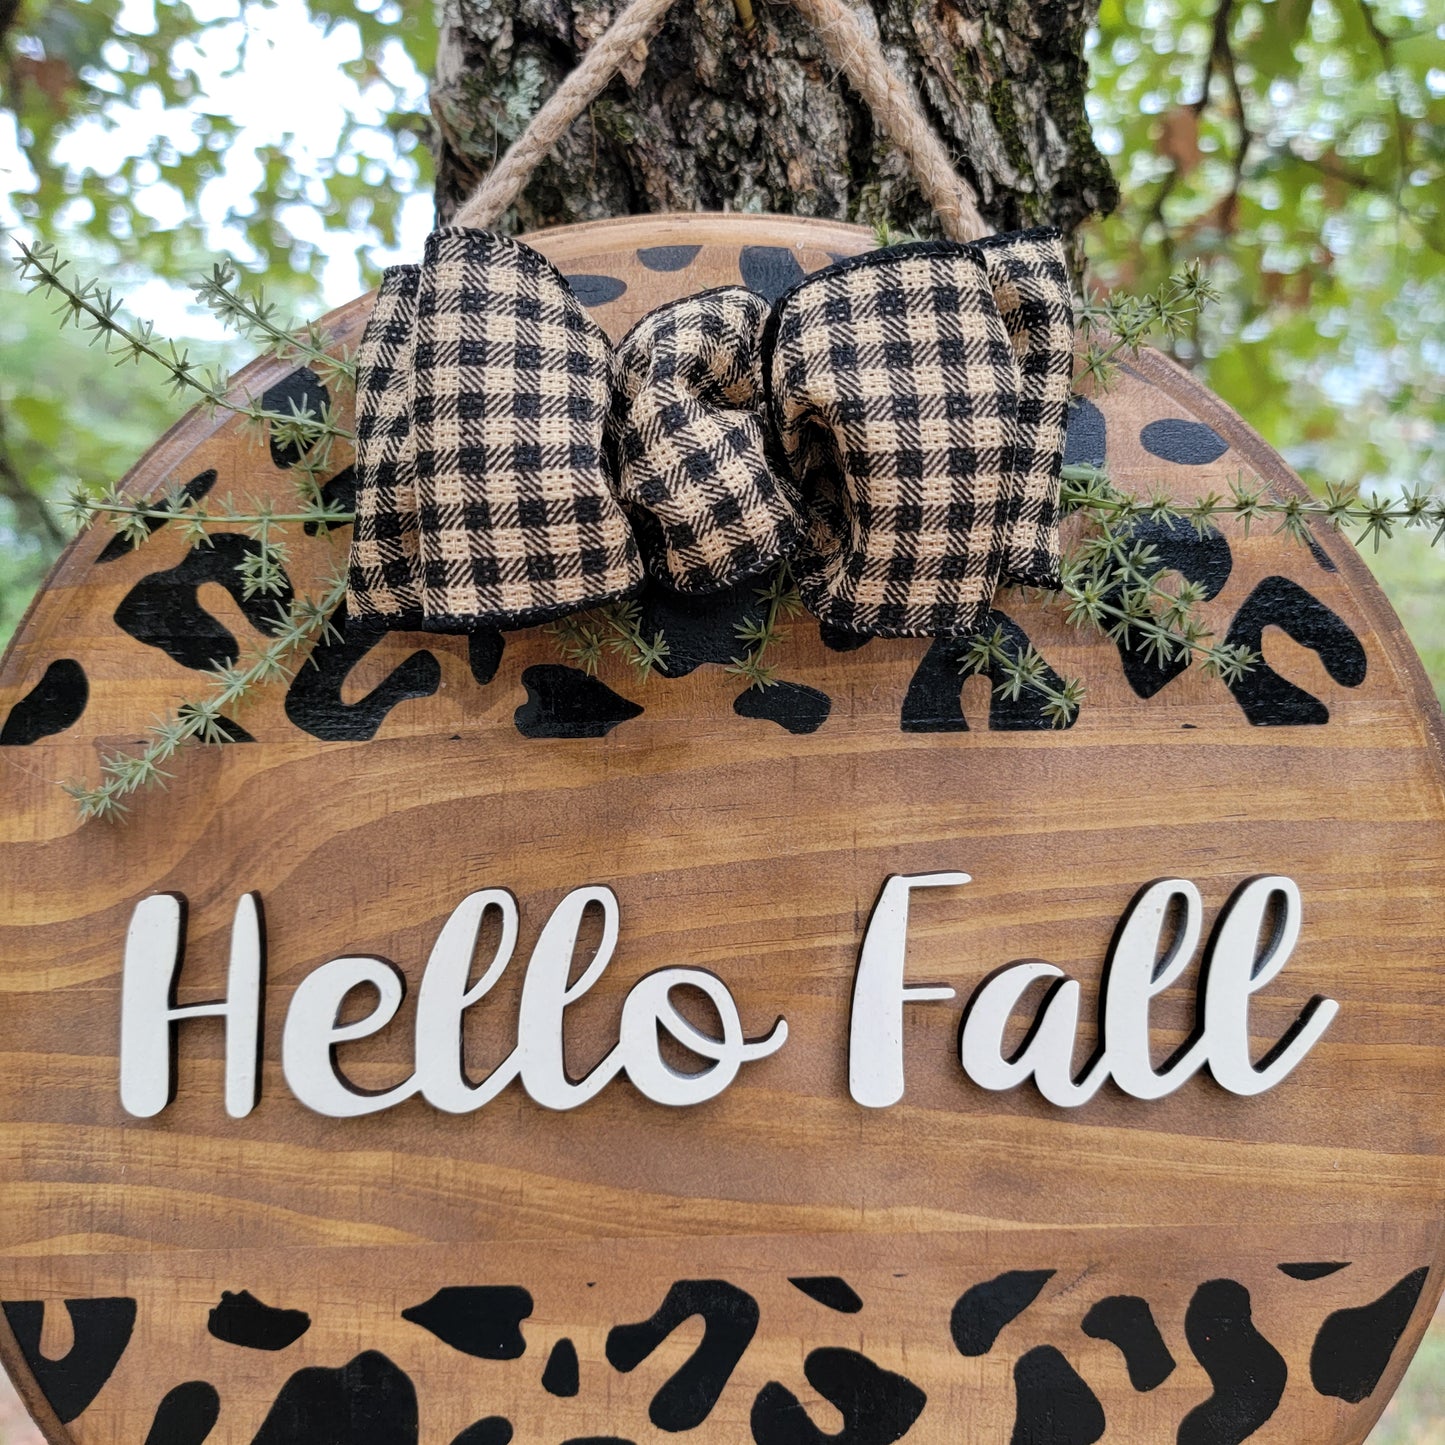 Cheetah Print "Hello Fall" Round